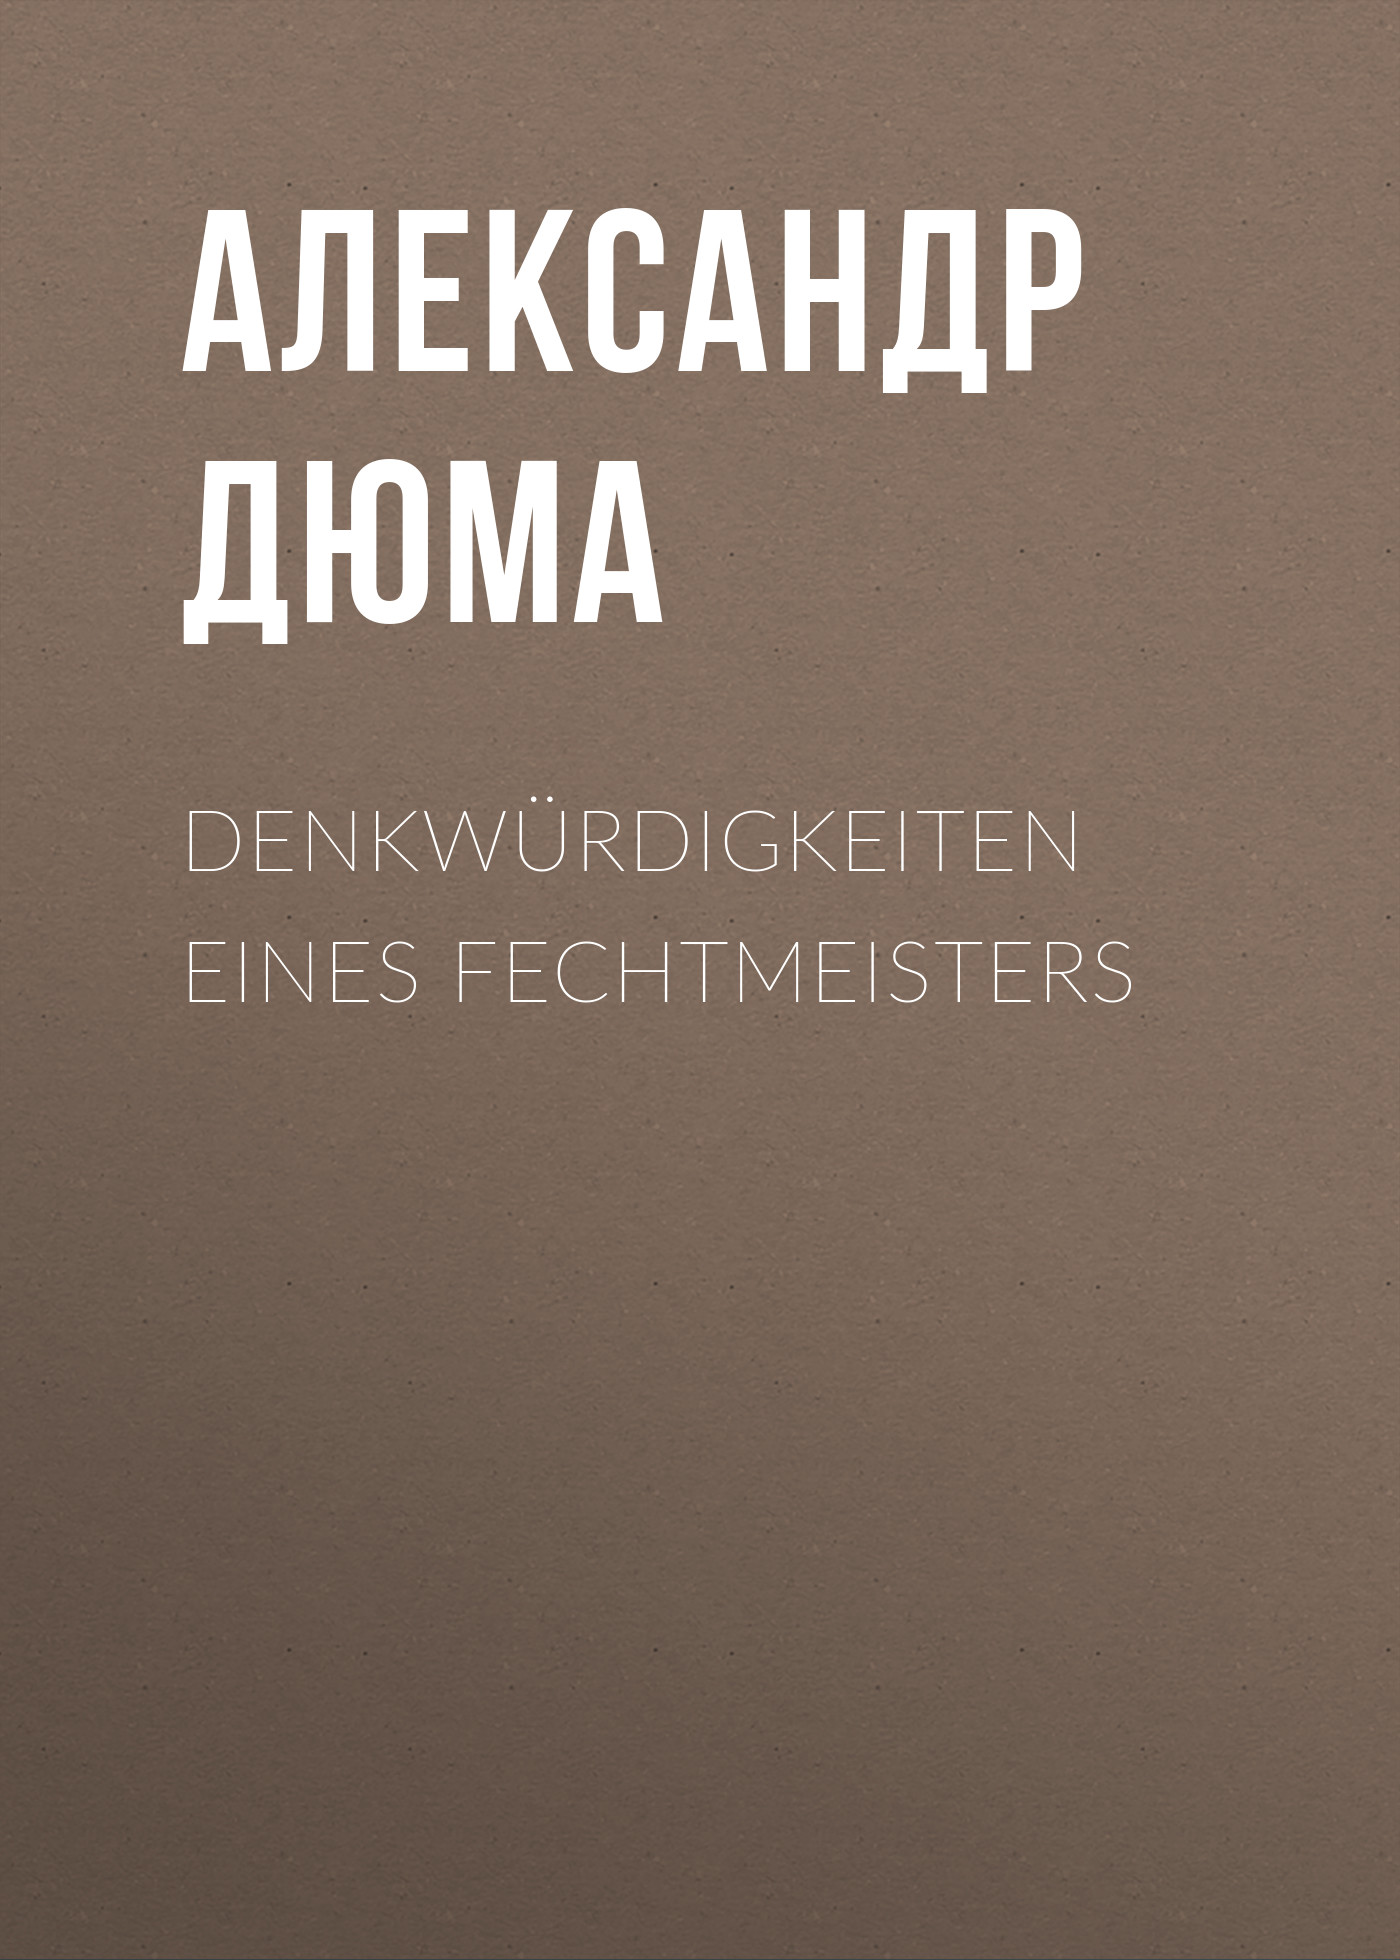 Книга Denkwürdigkeiten eines Fechtmeisters из серии , созданная Alexandre Dumas der Ältere, может относится к жанру Зарубежная классика. Стоимость электронной книги Denkwürdigkeiten eines Fechtmeisters с идентификатором 48632404 составляет 0 руб.